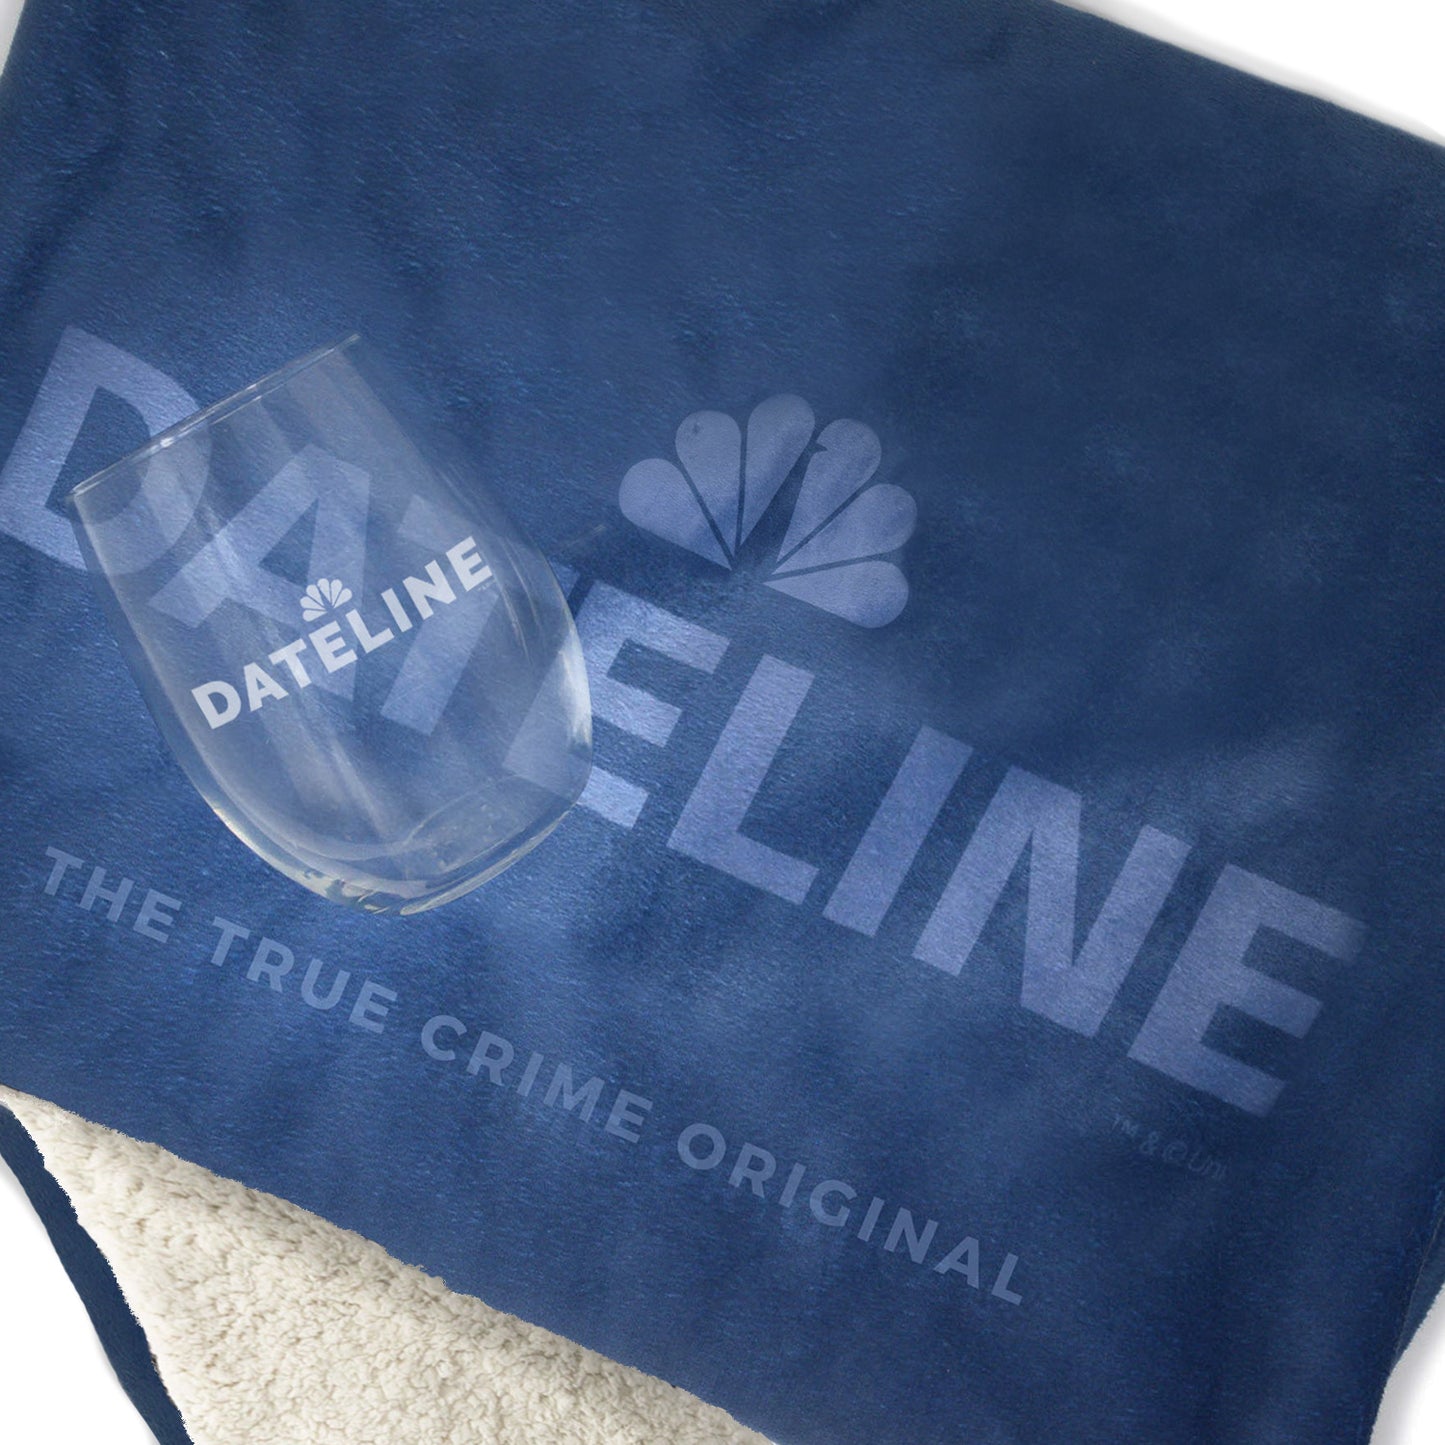 DATELINE Ultimate Fan Gift-Wrapped Bundle